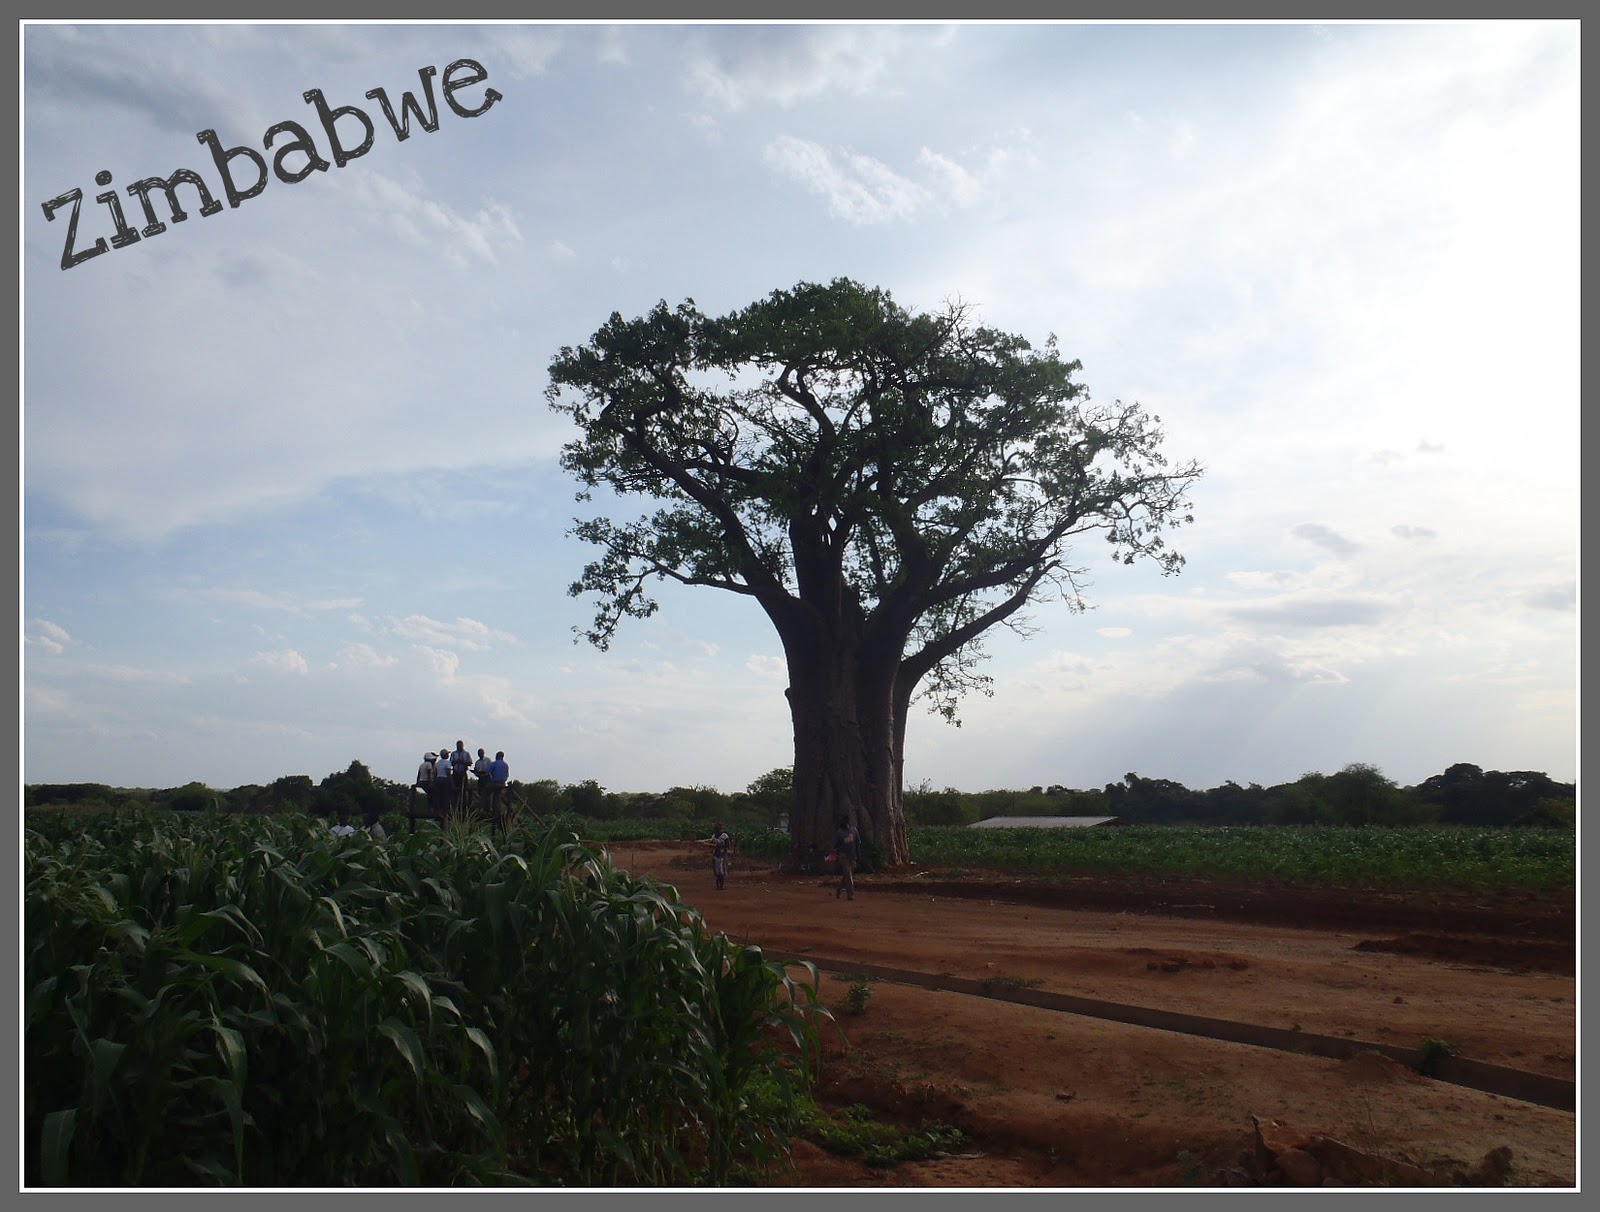 Pošalji mi razglednicu, neću SMS, po azbuci - Page 8 Zimbabwe+postcard